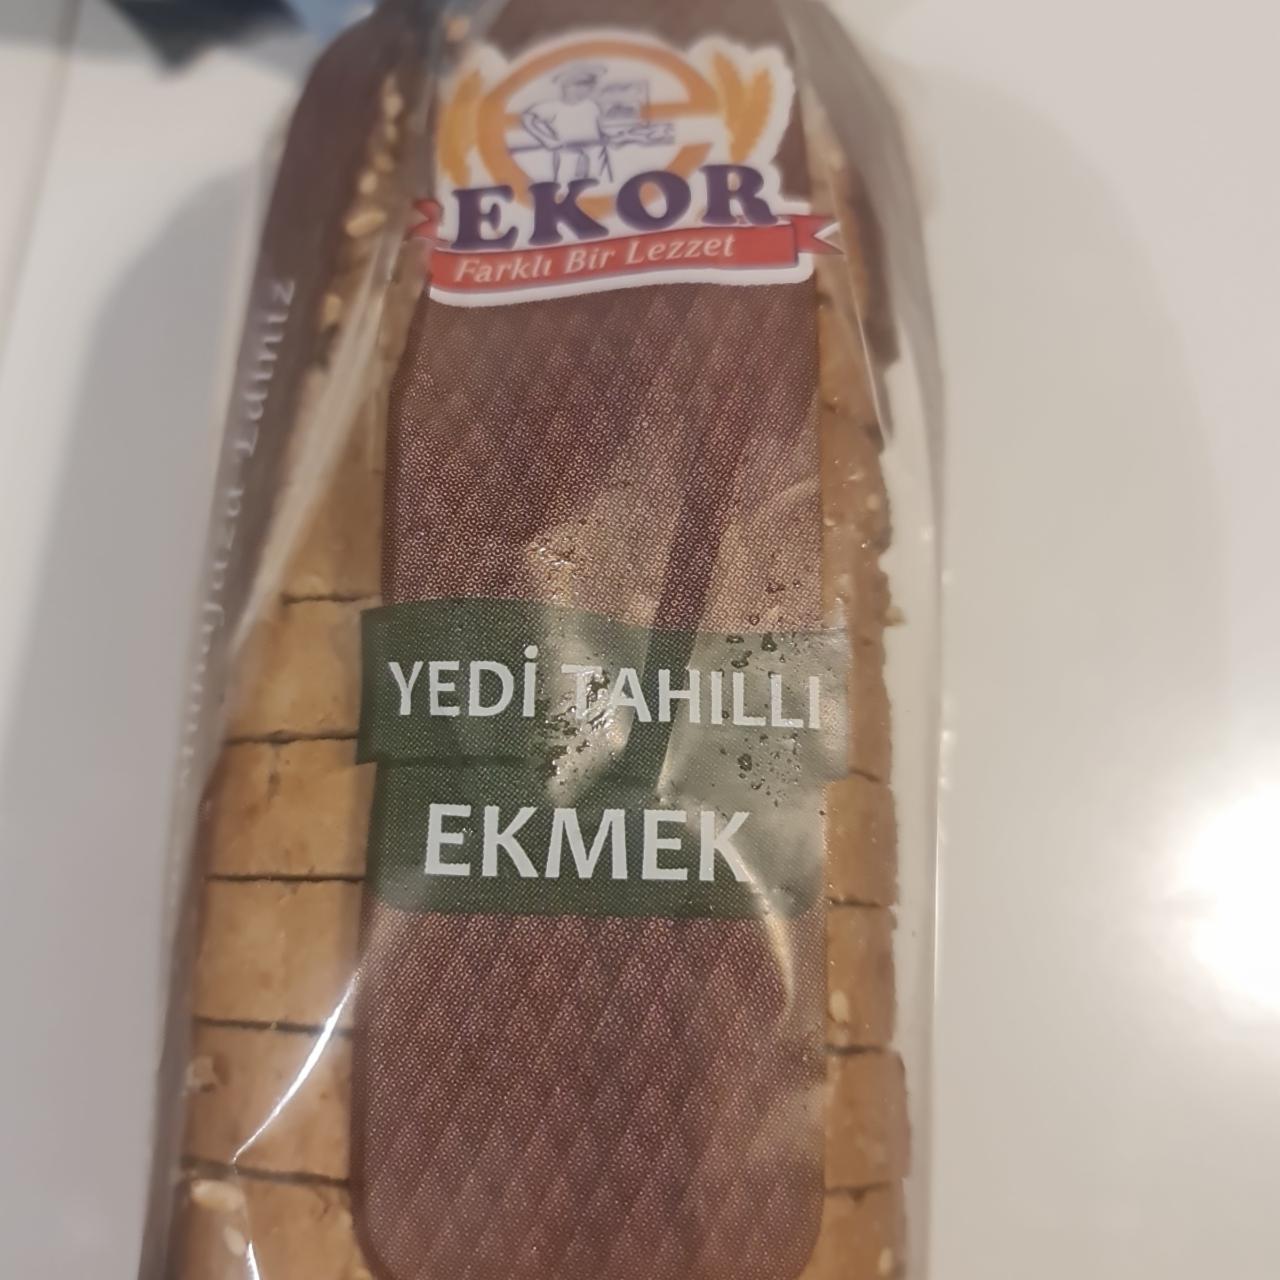 Фото - Yedi tahilli ekmek Ekor